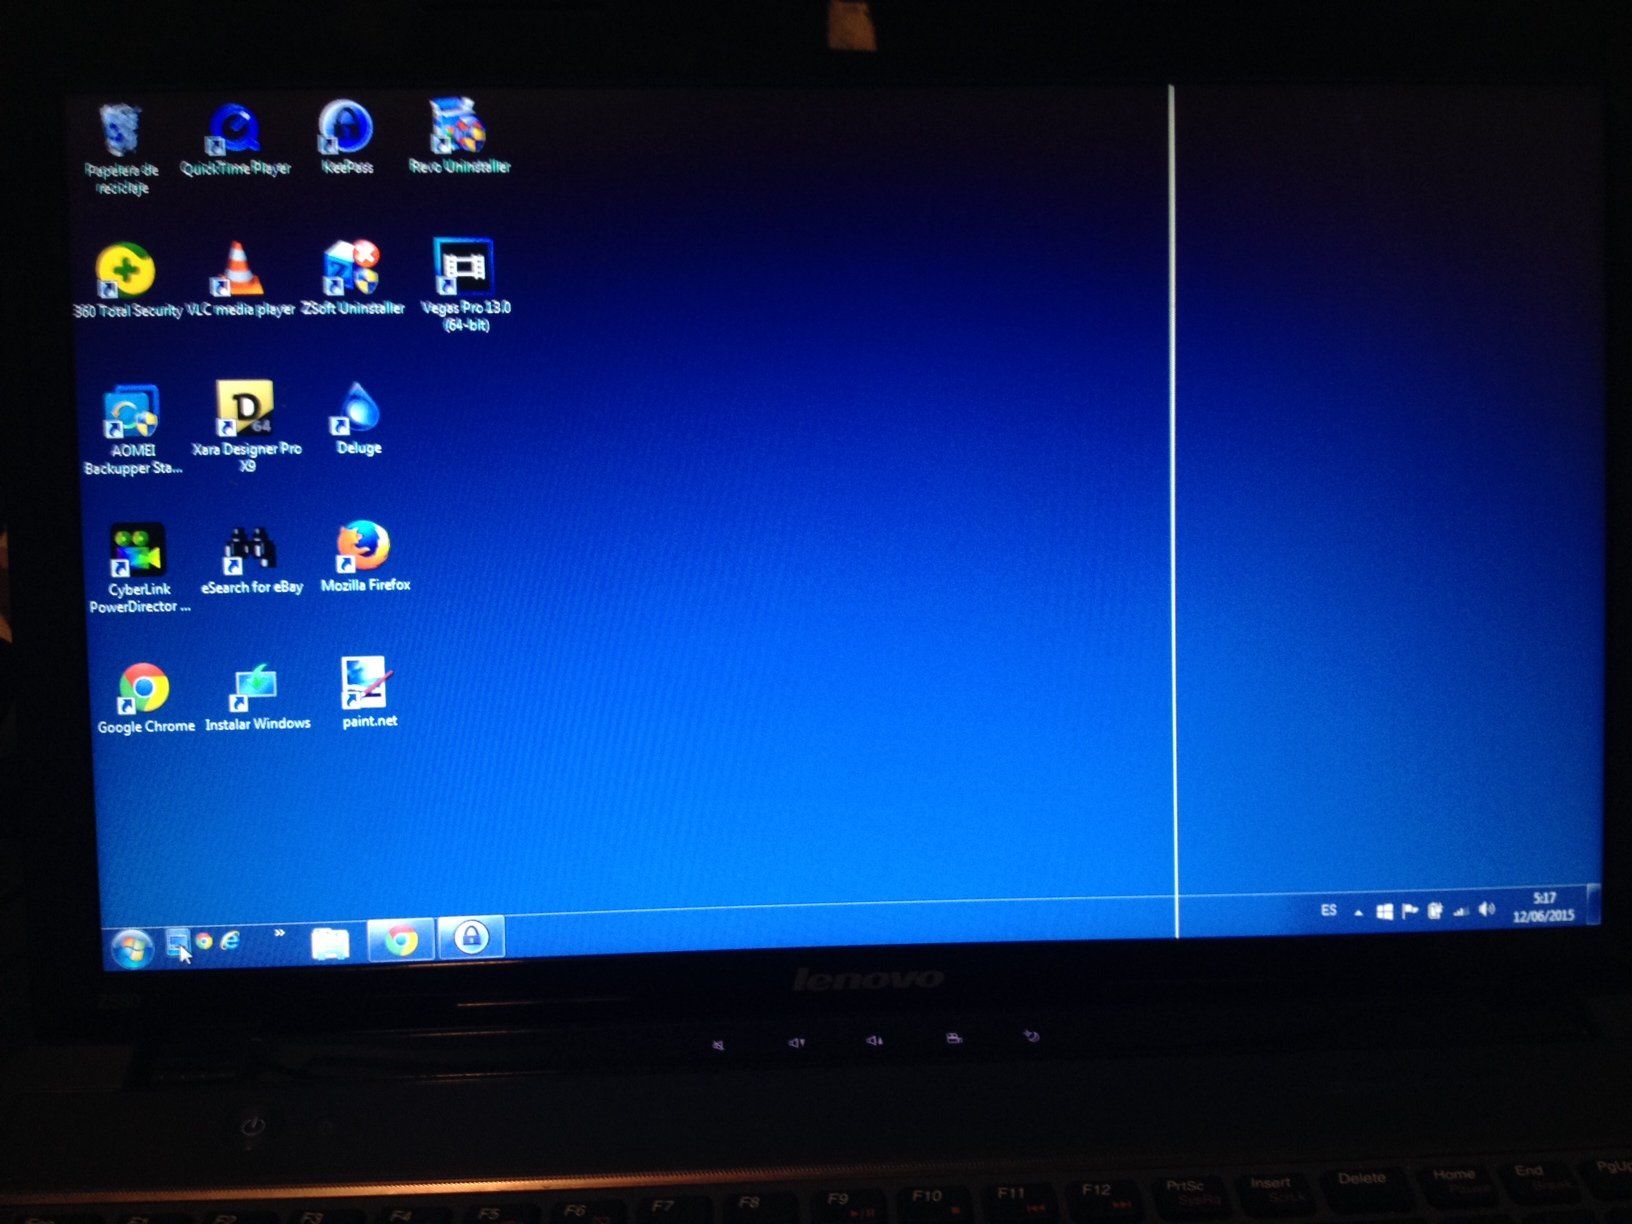 ¿Por qué la pantalla de mi PC tiene rayas?